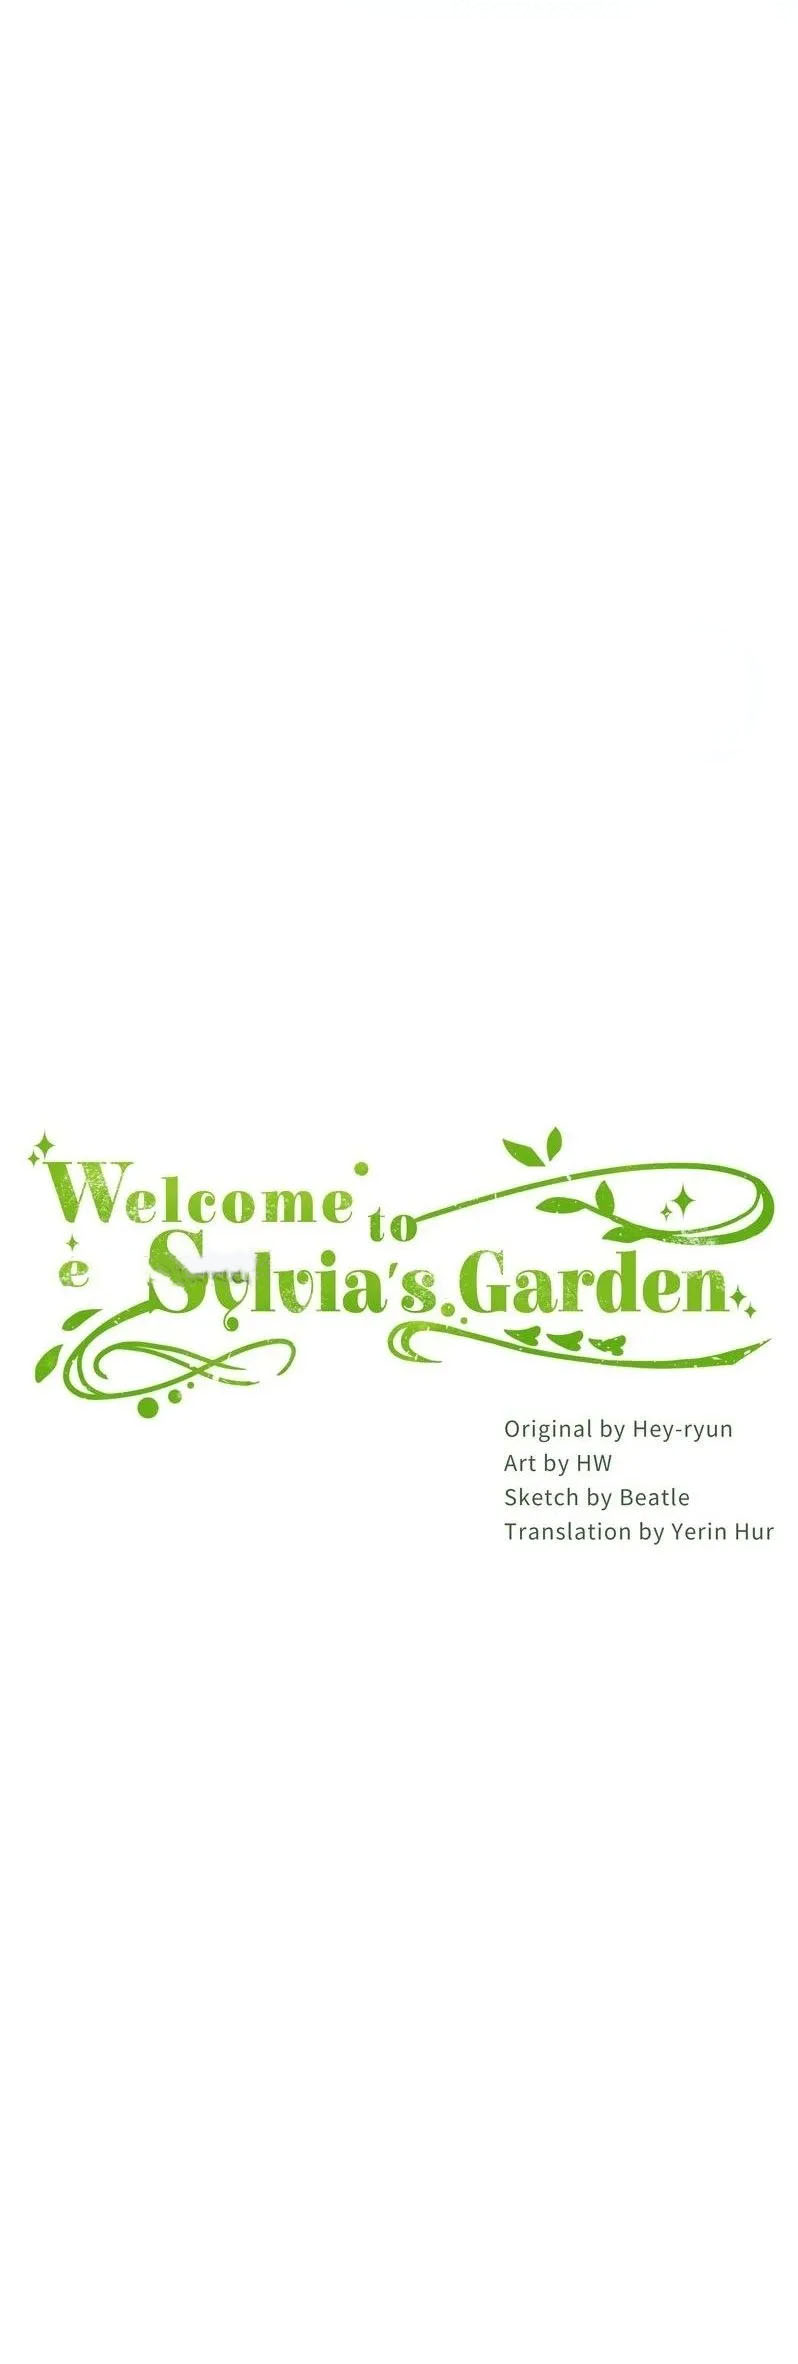 Welcome to Sylvia's Garden 55 (2)